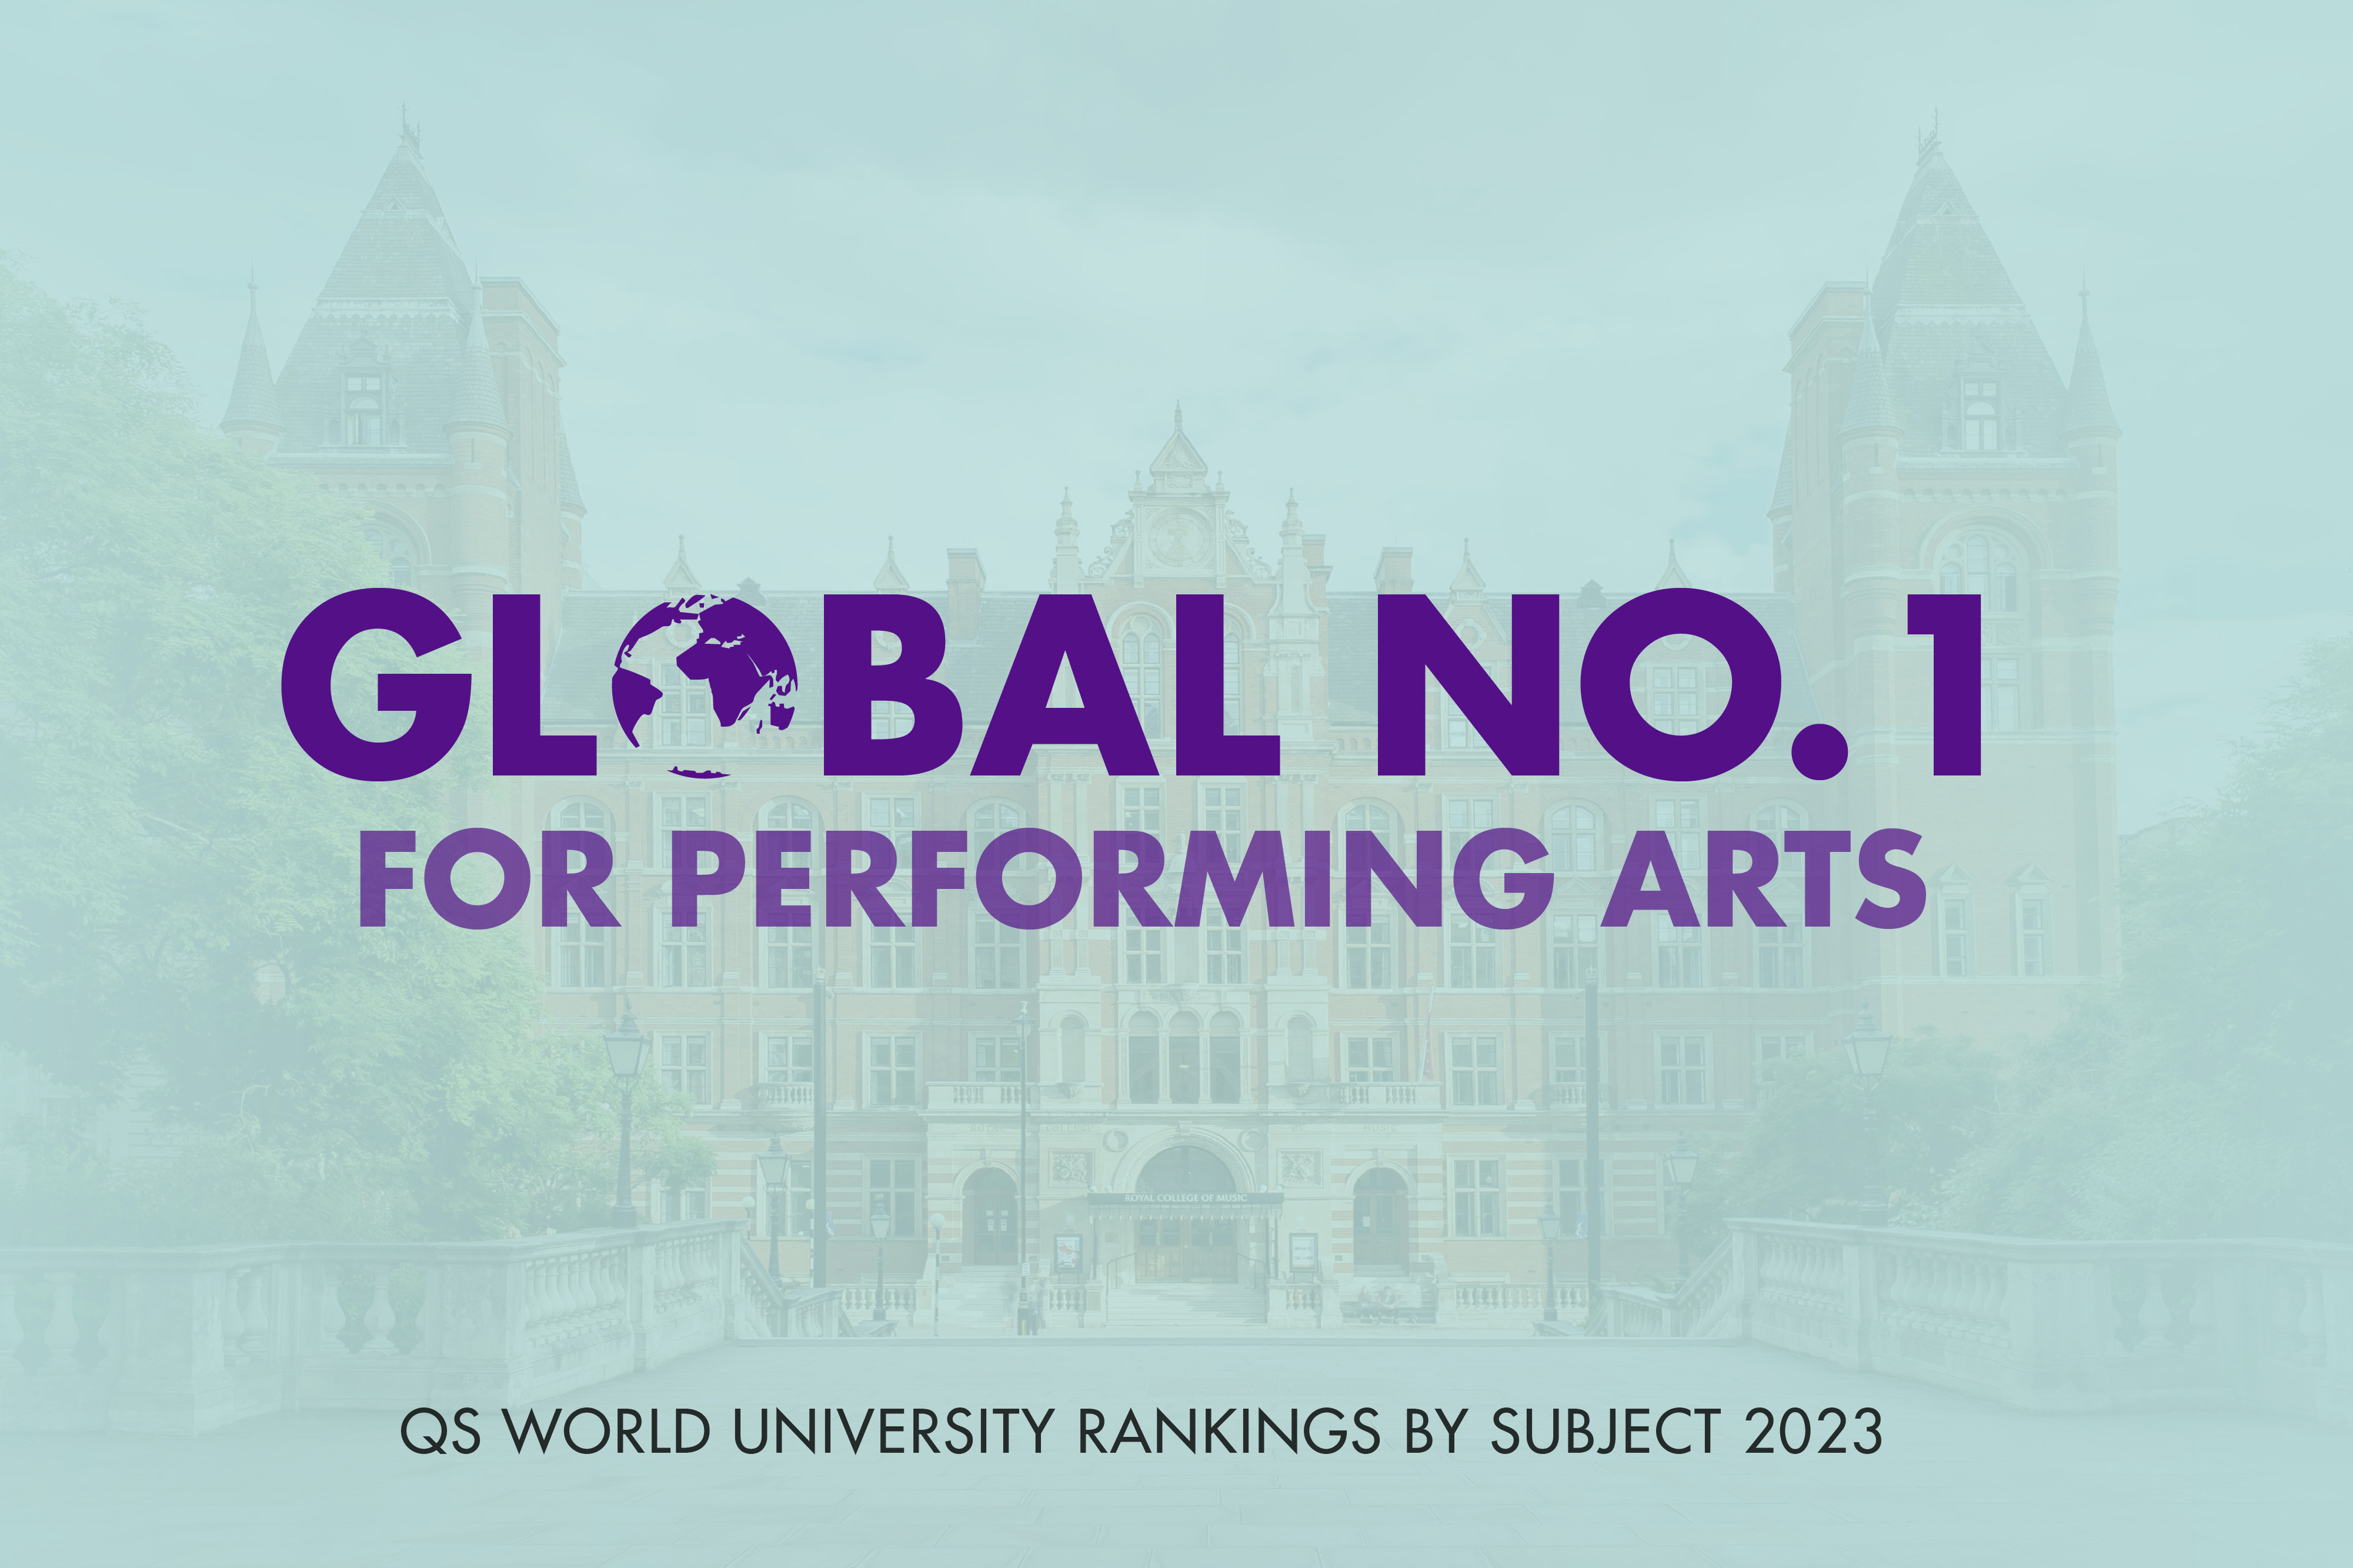 鶹Ƶ ranked global No. 1 for performing arts 2023